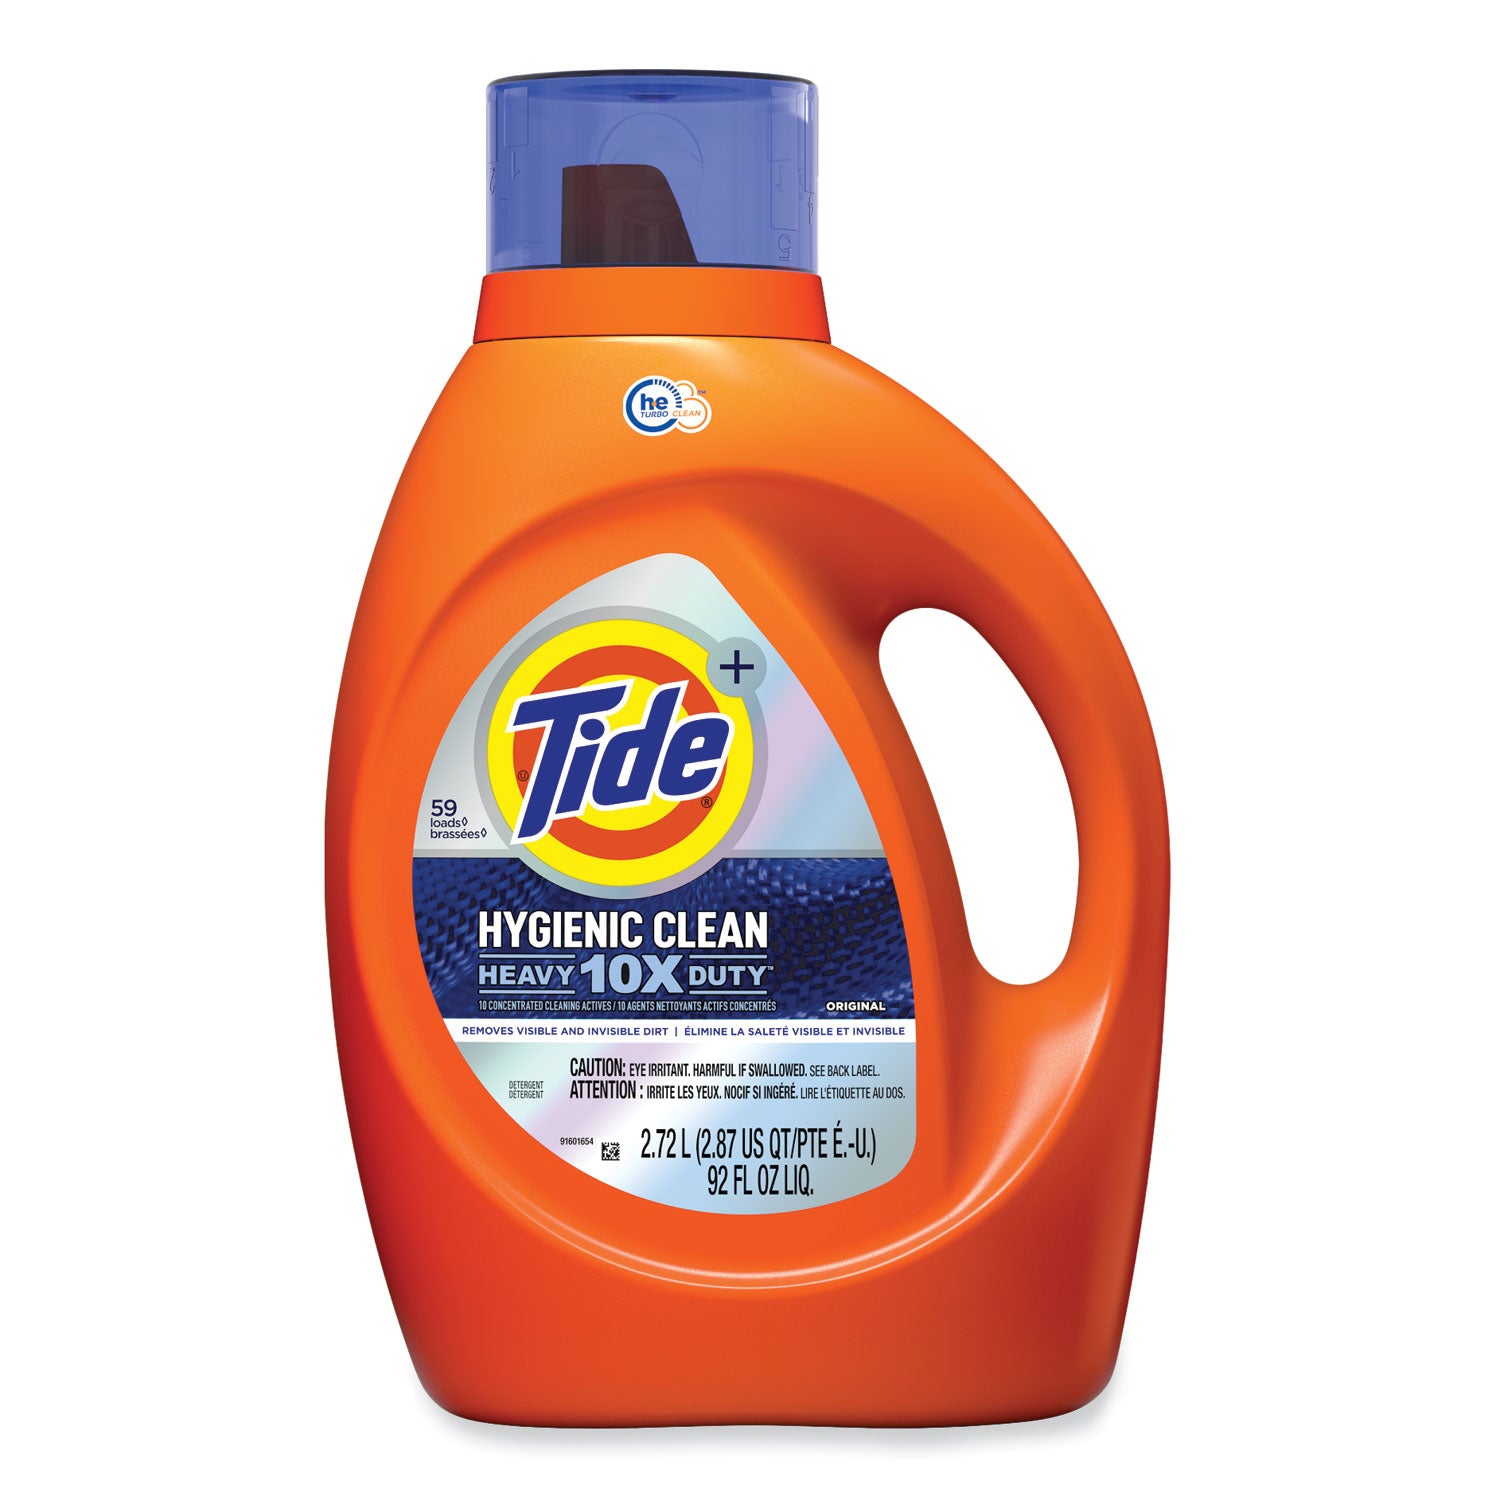 hygienic-clean-heavy-10x-duty-liquid-laundry-detergent-original-92-oz-bottle-4-carton_pgc25787 - 1